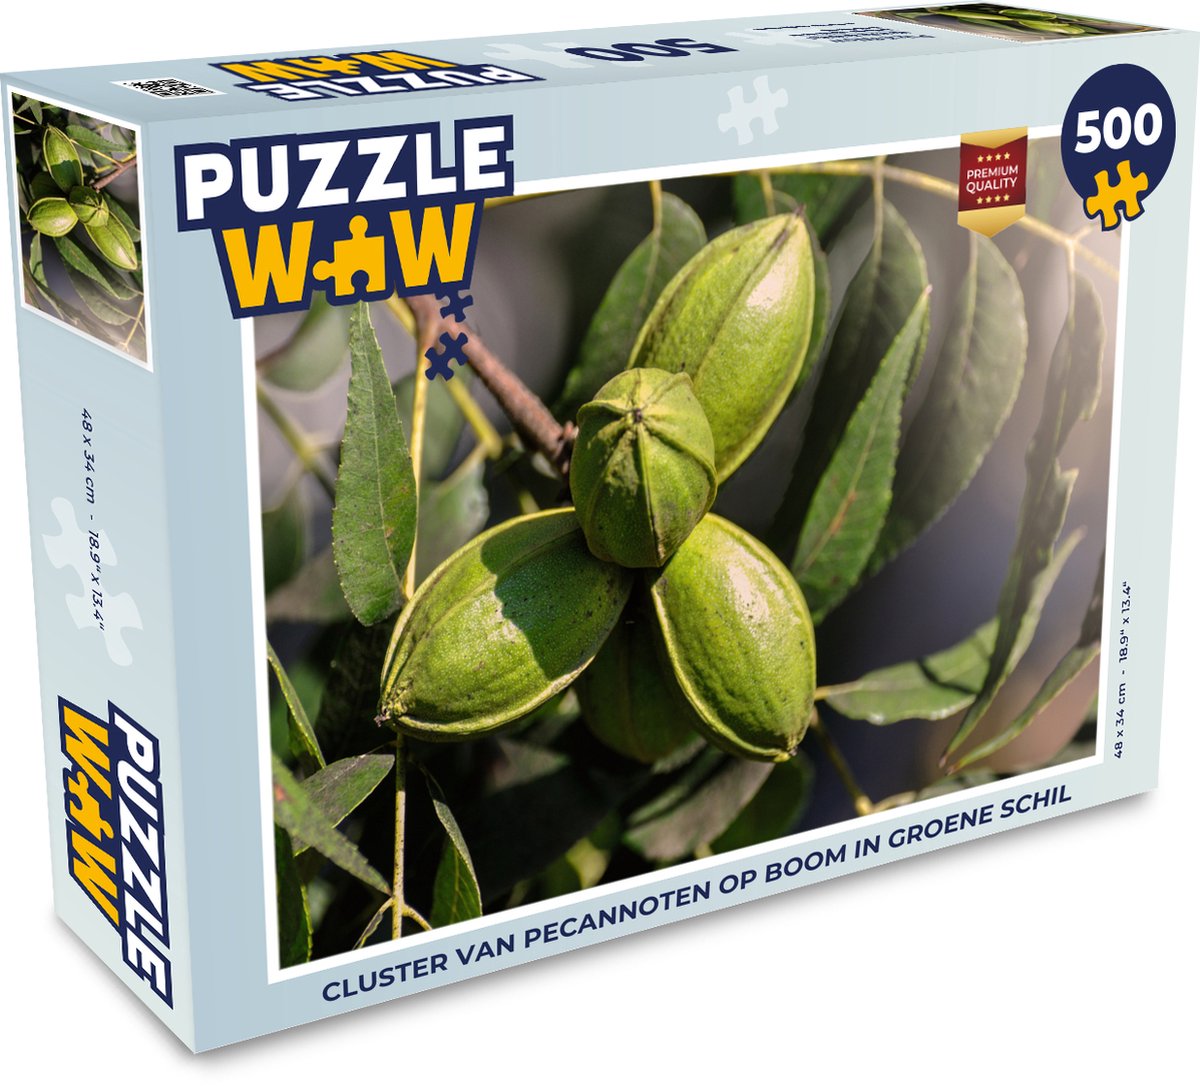 Afbeelding van product Puzzel 500 stukjes Pecannoot - Cluster van pecannoten op boom in groene schil - PuzzleWow heeft +100000 puzzels